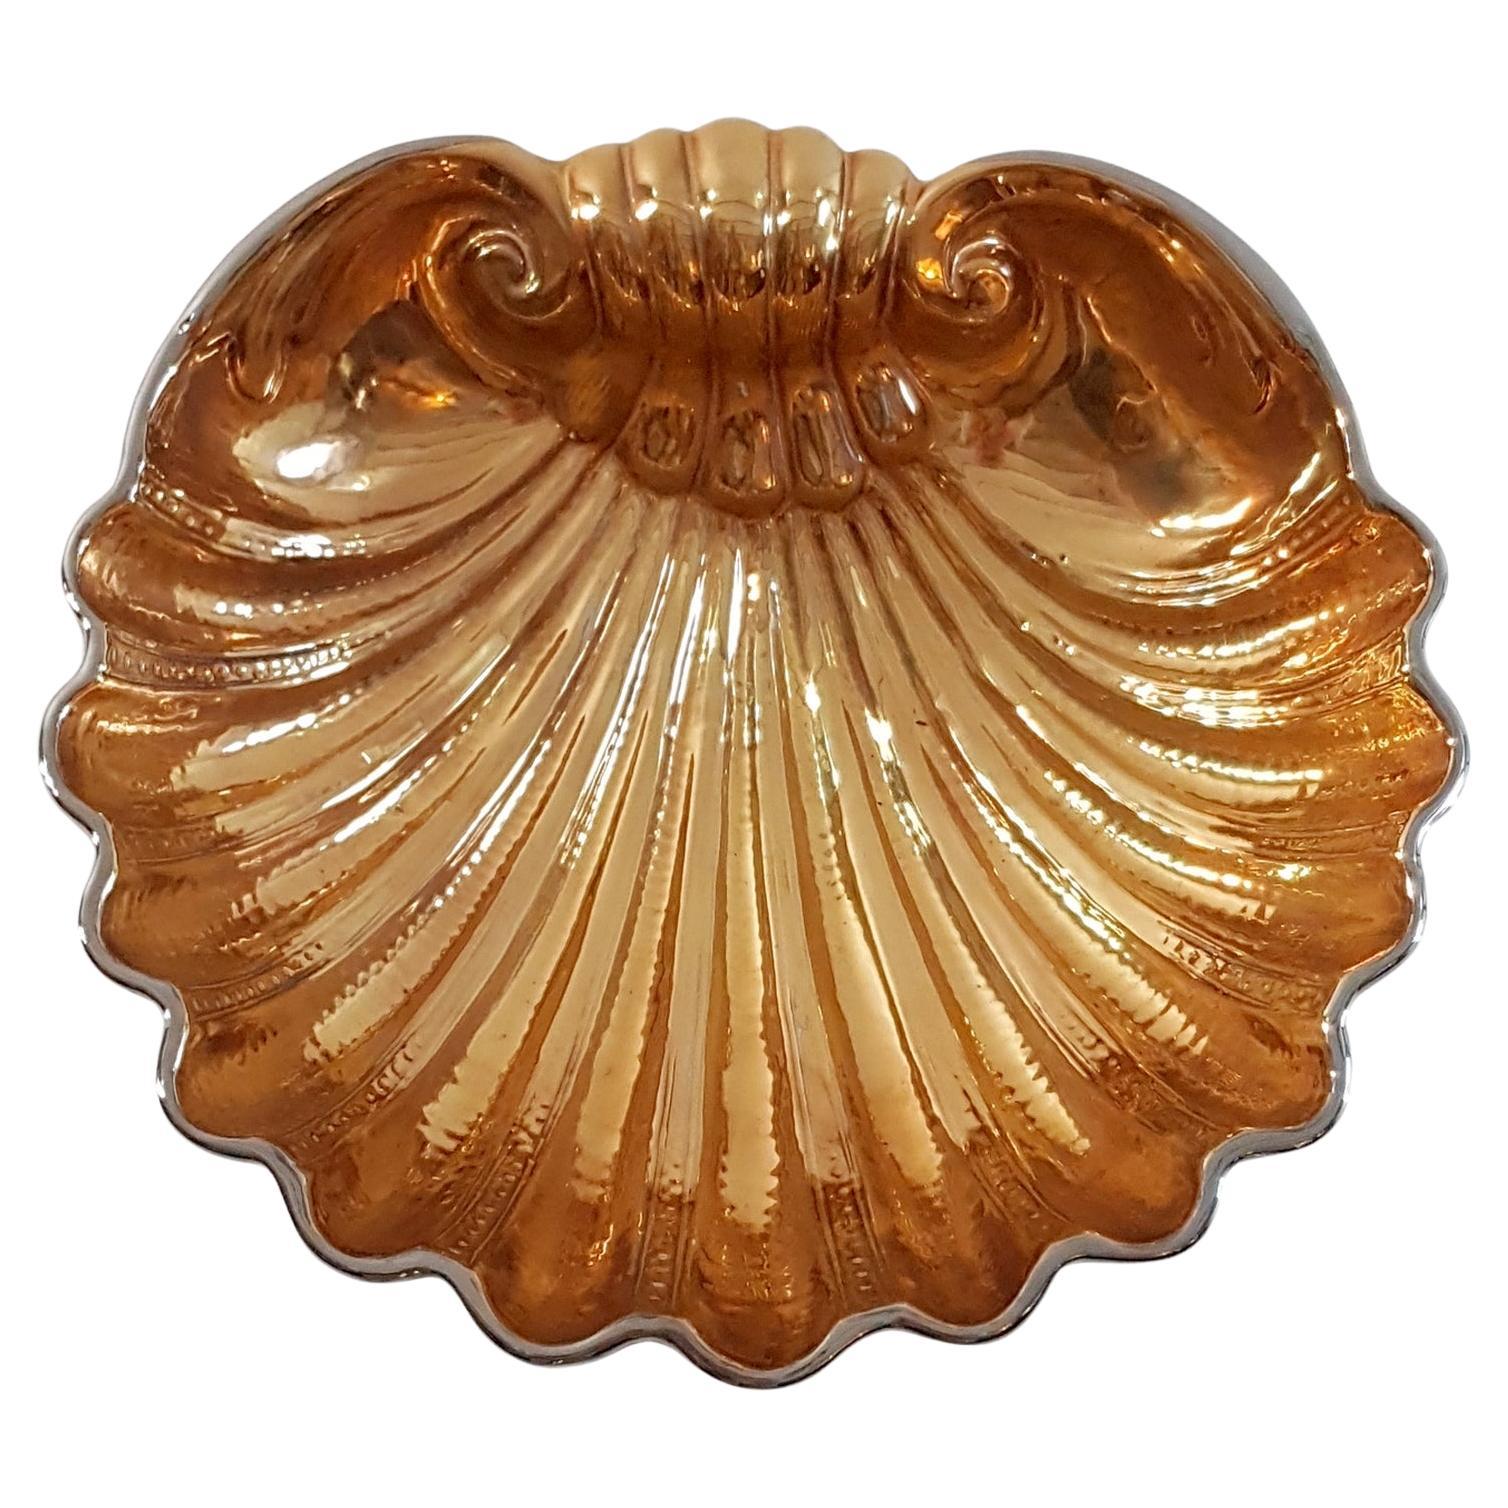 Eine große San Marco Keramikschüssel mit goldenen und silbernen Muscheln. Innen goldfarben glasiert, außen mit kontrastierender Chromschale. Ideal für dekorative Zwecke oder als Obstschale. Kein Verblassen, Abplatzen oder Risse.